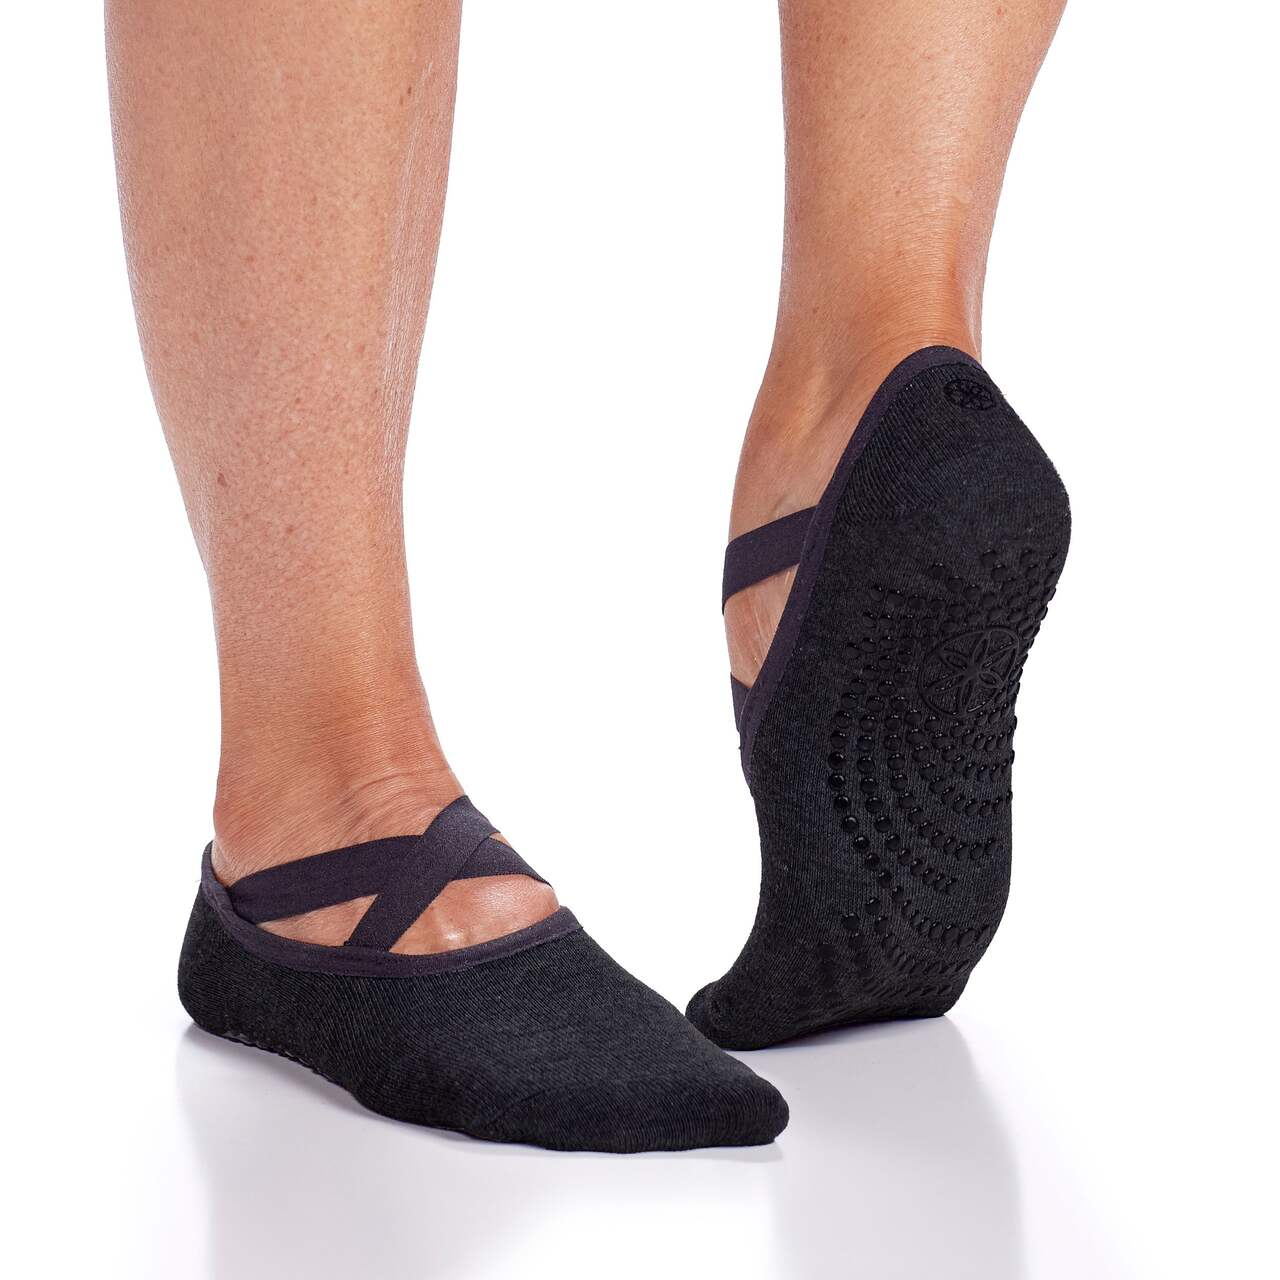 Gaiam Yoga Socks, Black, 2-pk